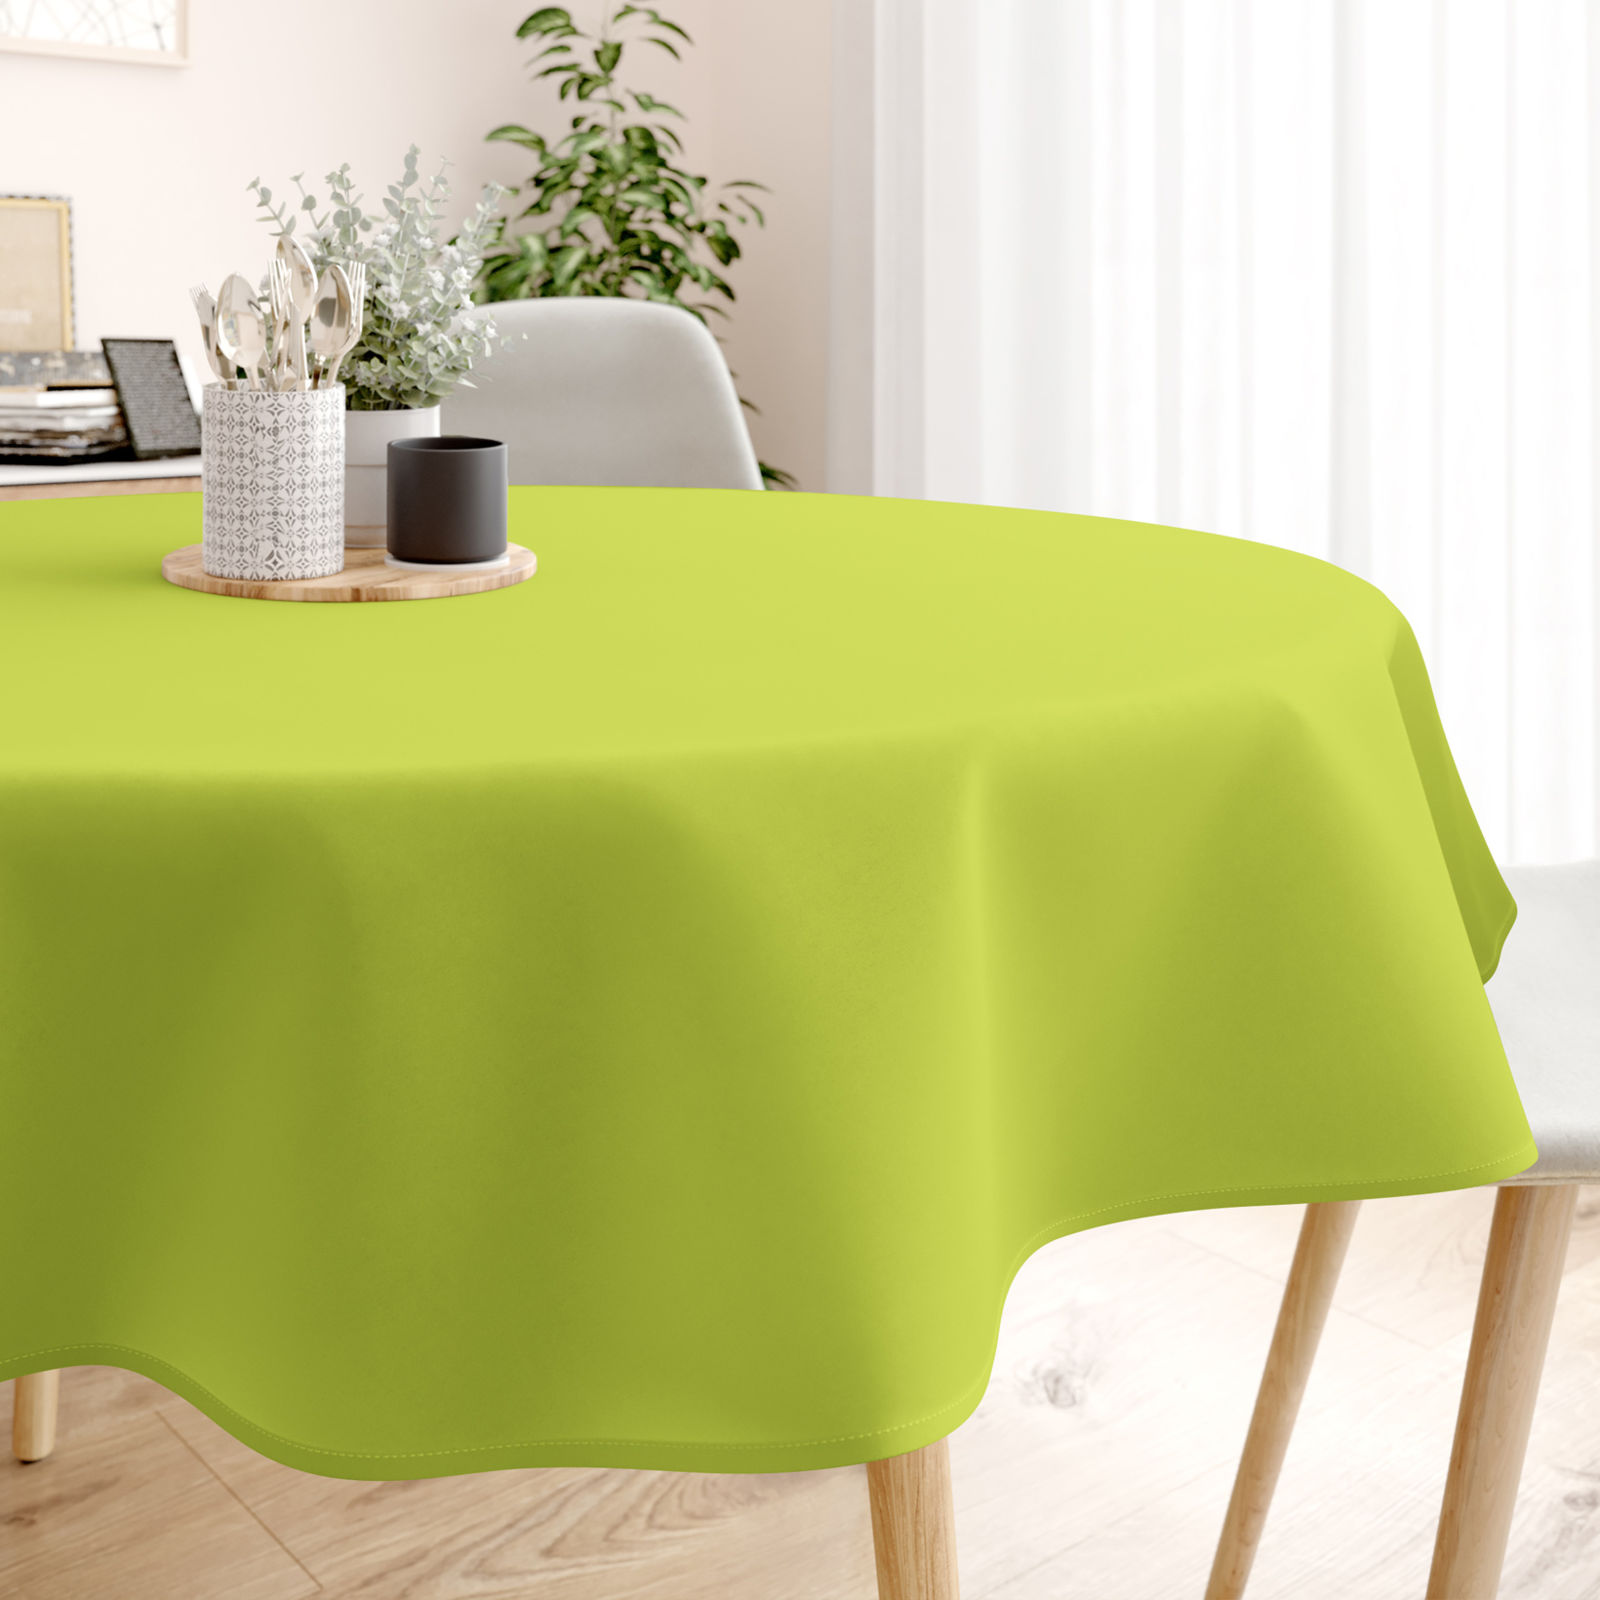 LONETA dekoratív asztalterítő - zöld színű - kör alakú